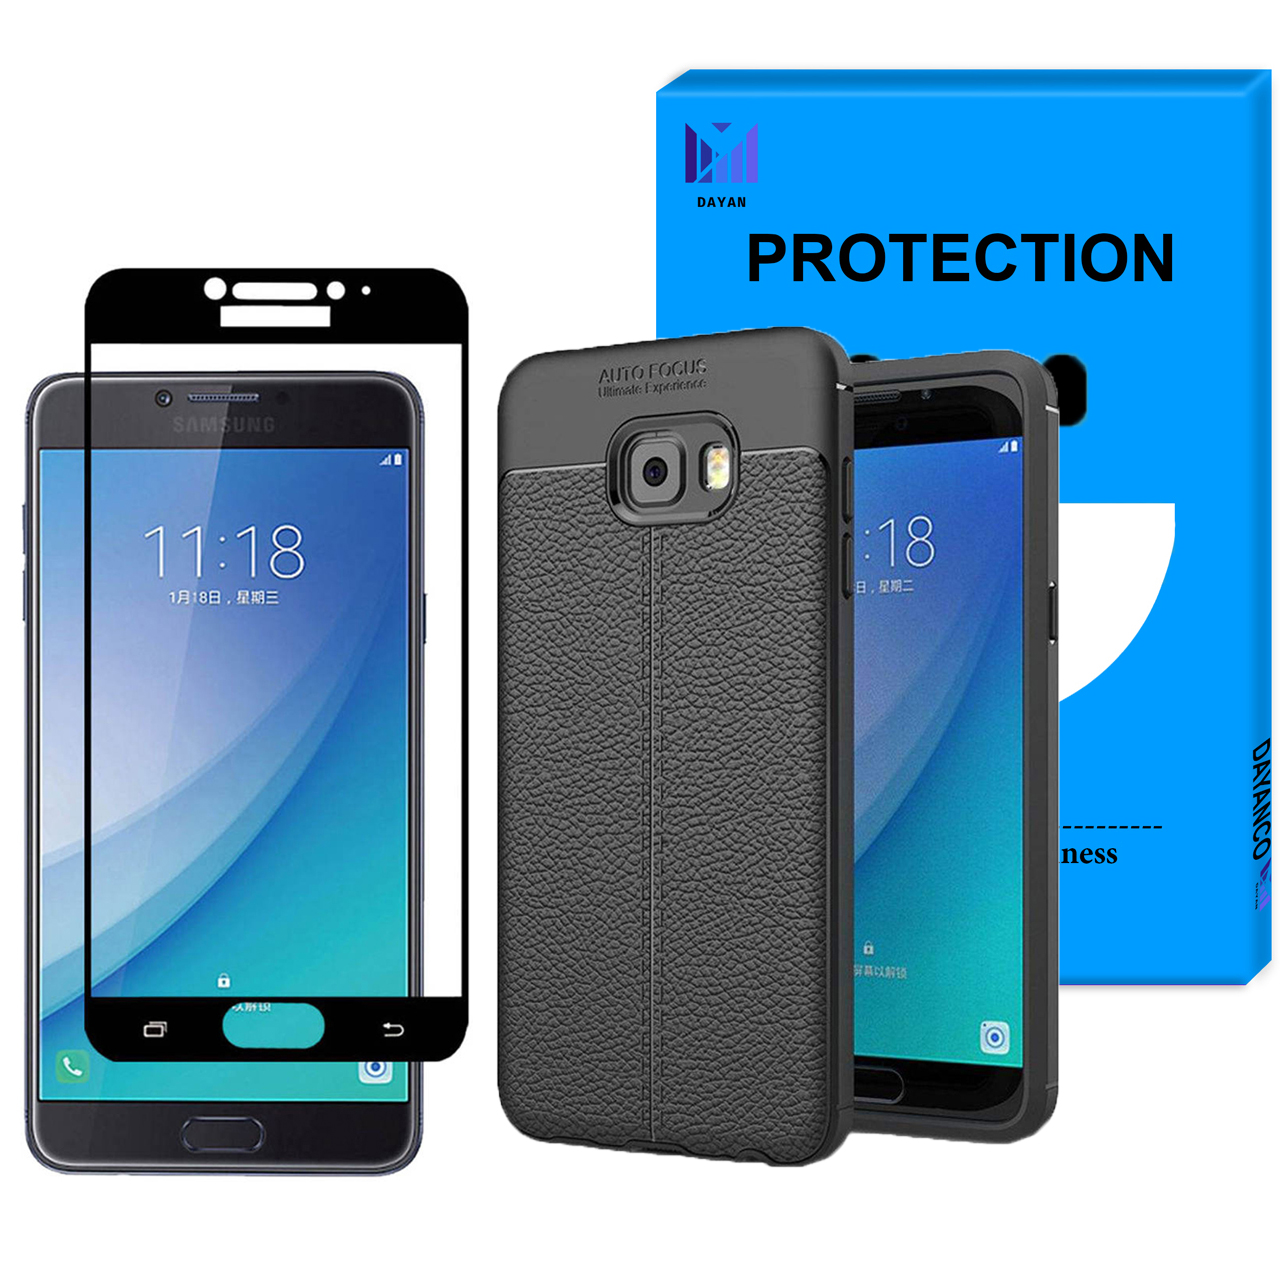 کاور دایان مدل D_AG مناسب برای گوشی موبایل سامسونگ Galaxy C7 Pro به همراه محافظ صفحه نمایش